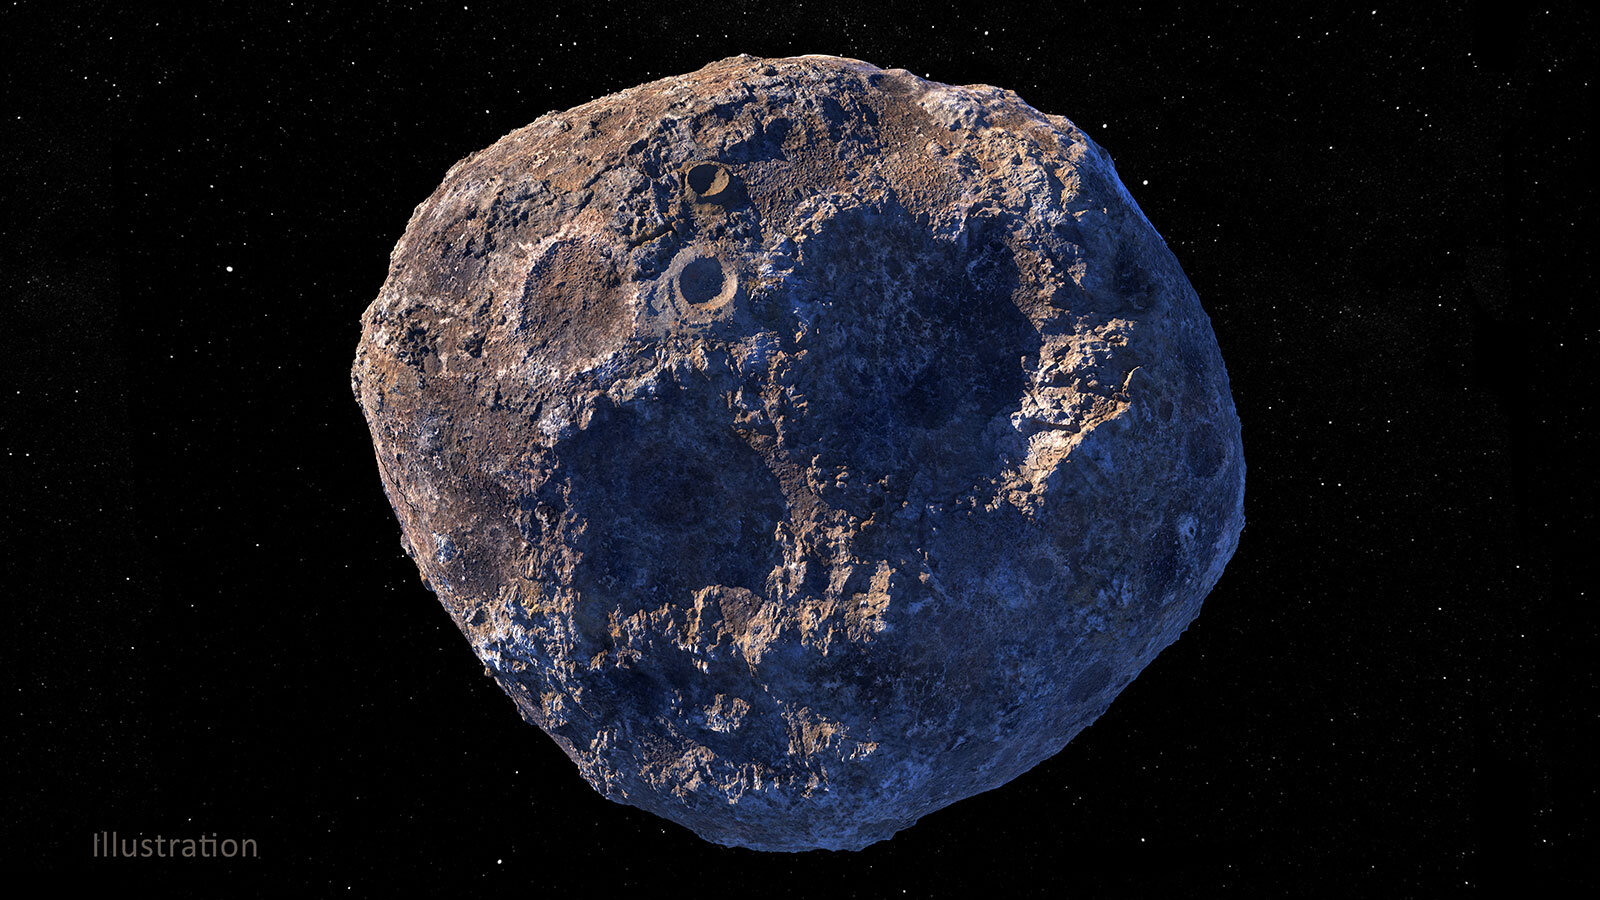 НАСА початок фінальну збірку космічного корабля для польоту на астероїд Психея